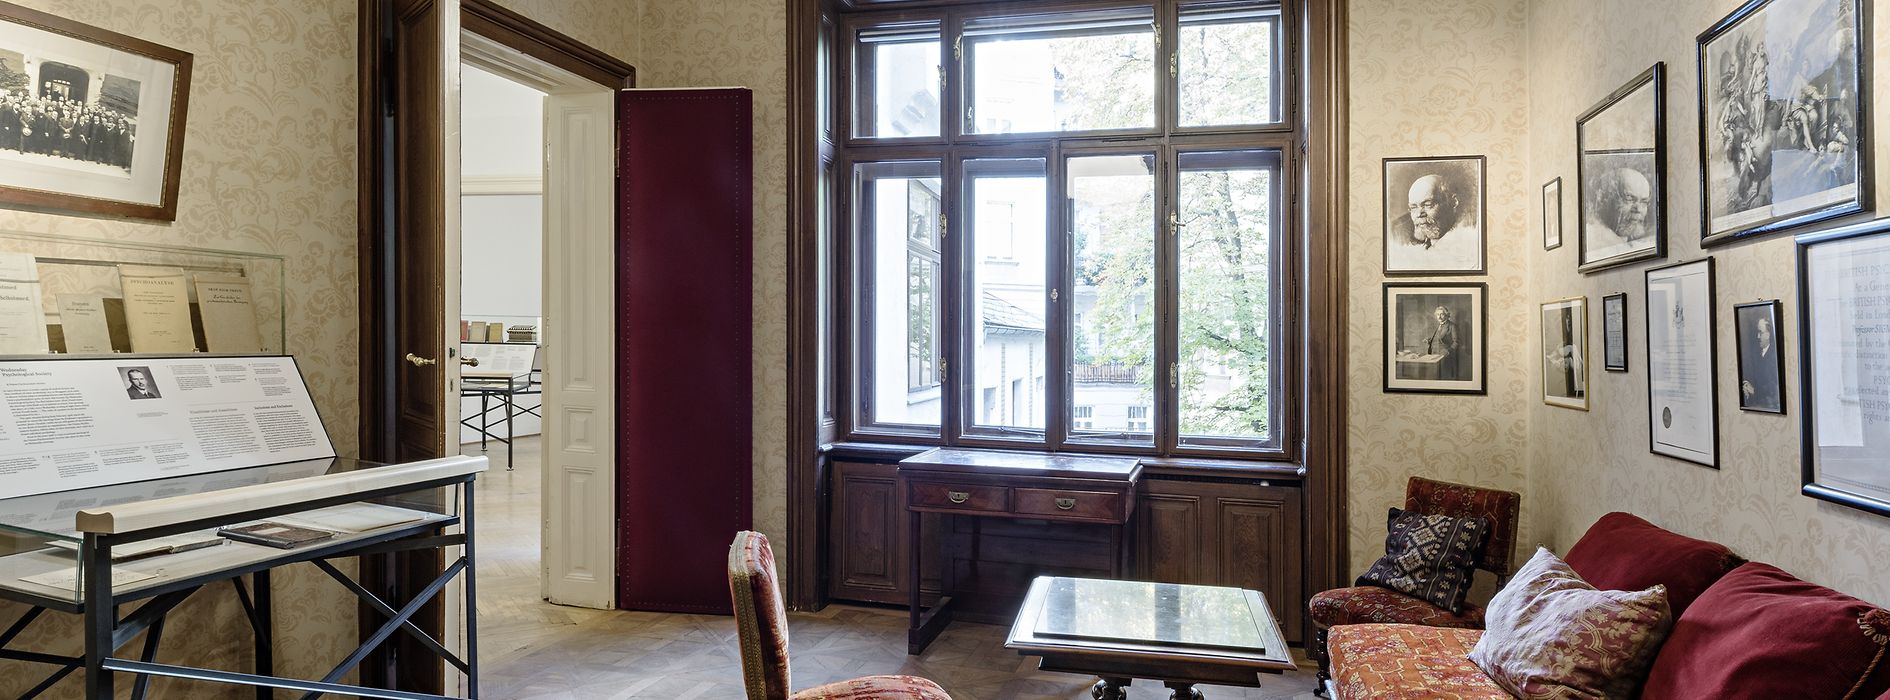 Salle d'attente avec ses meubles d'origine au Musée Sigmund Freud 